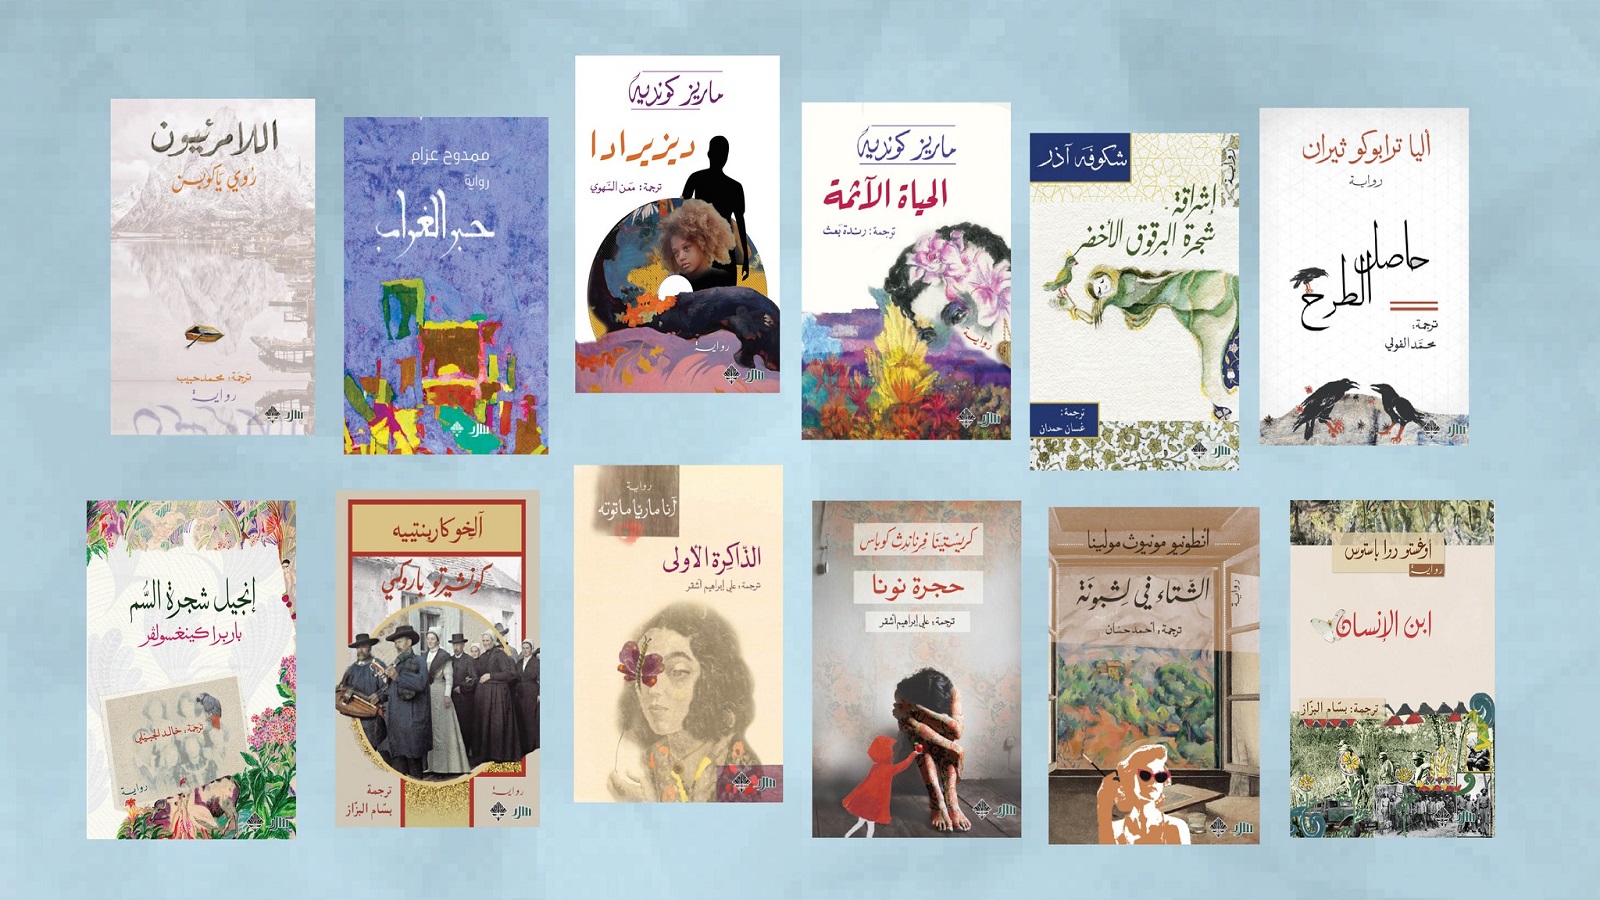 القارئ فقد الثقة في الكتاب العربي...والبديل هو المترجم